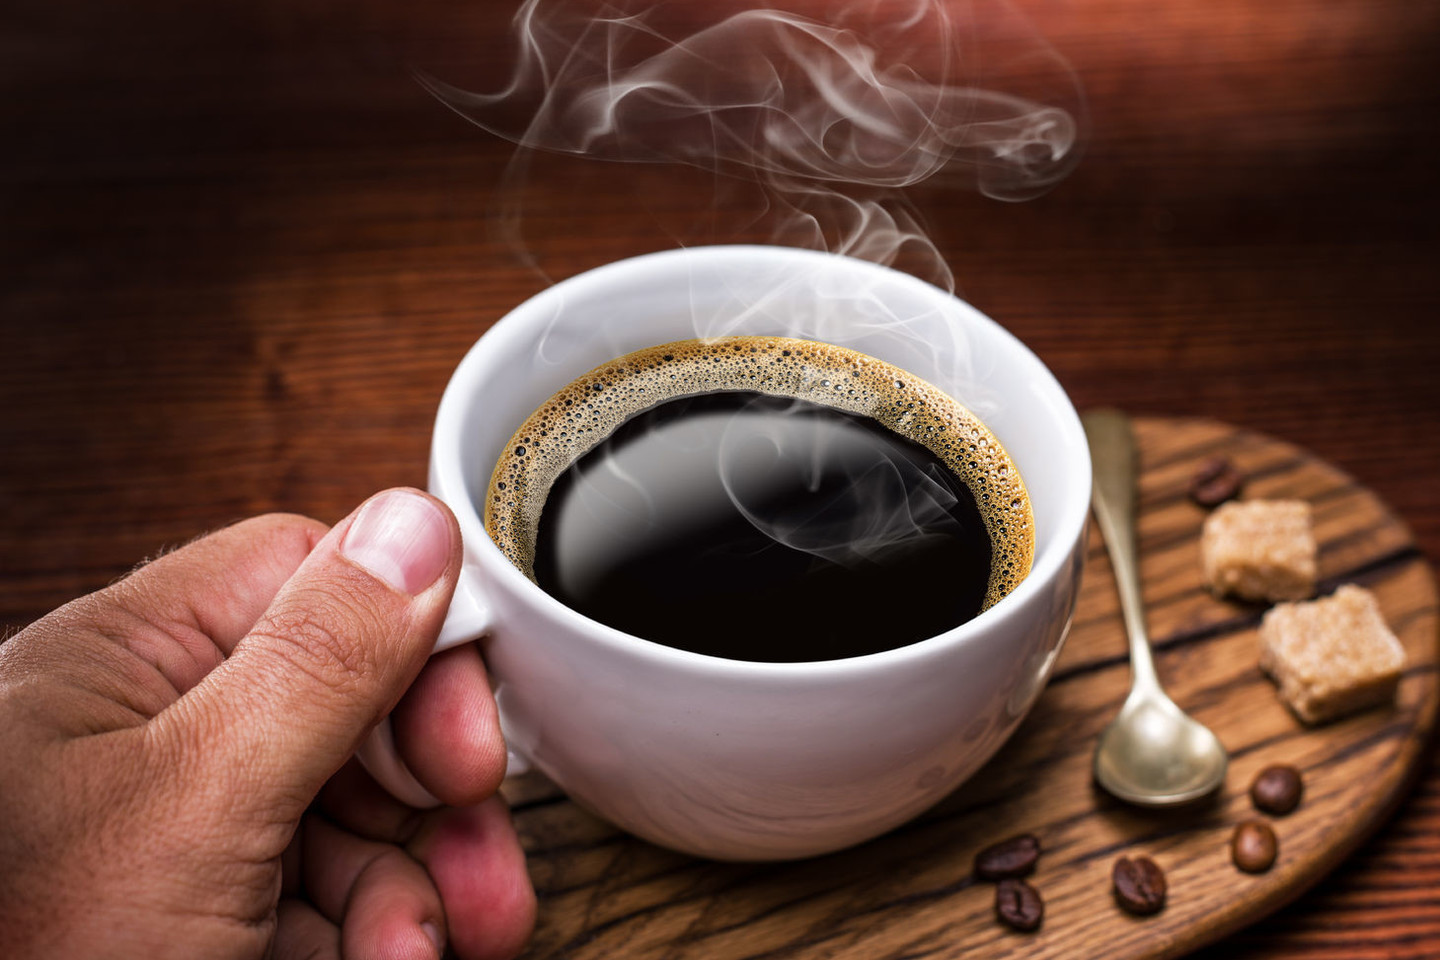 Rinkdamiesi gėrimus žiemą lietuviai pirmenybę teikia karštiesiems gėrimams. 22 proc. respondentų tikino žiemą mielai geriantys arbatą, 24 proc. tikino dažniausiai geriantys kavą, o 48 proc. apklaustųjų sakė, kad mielai skanauja abiejų gėrimų. <br>123rf